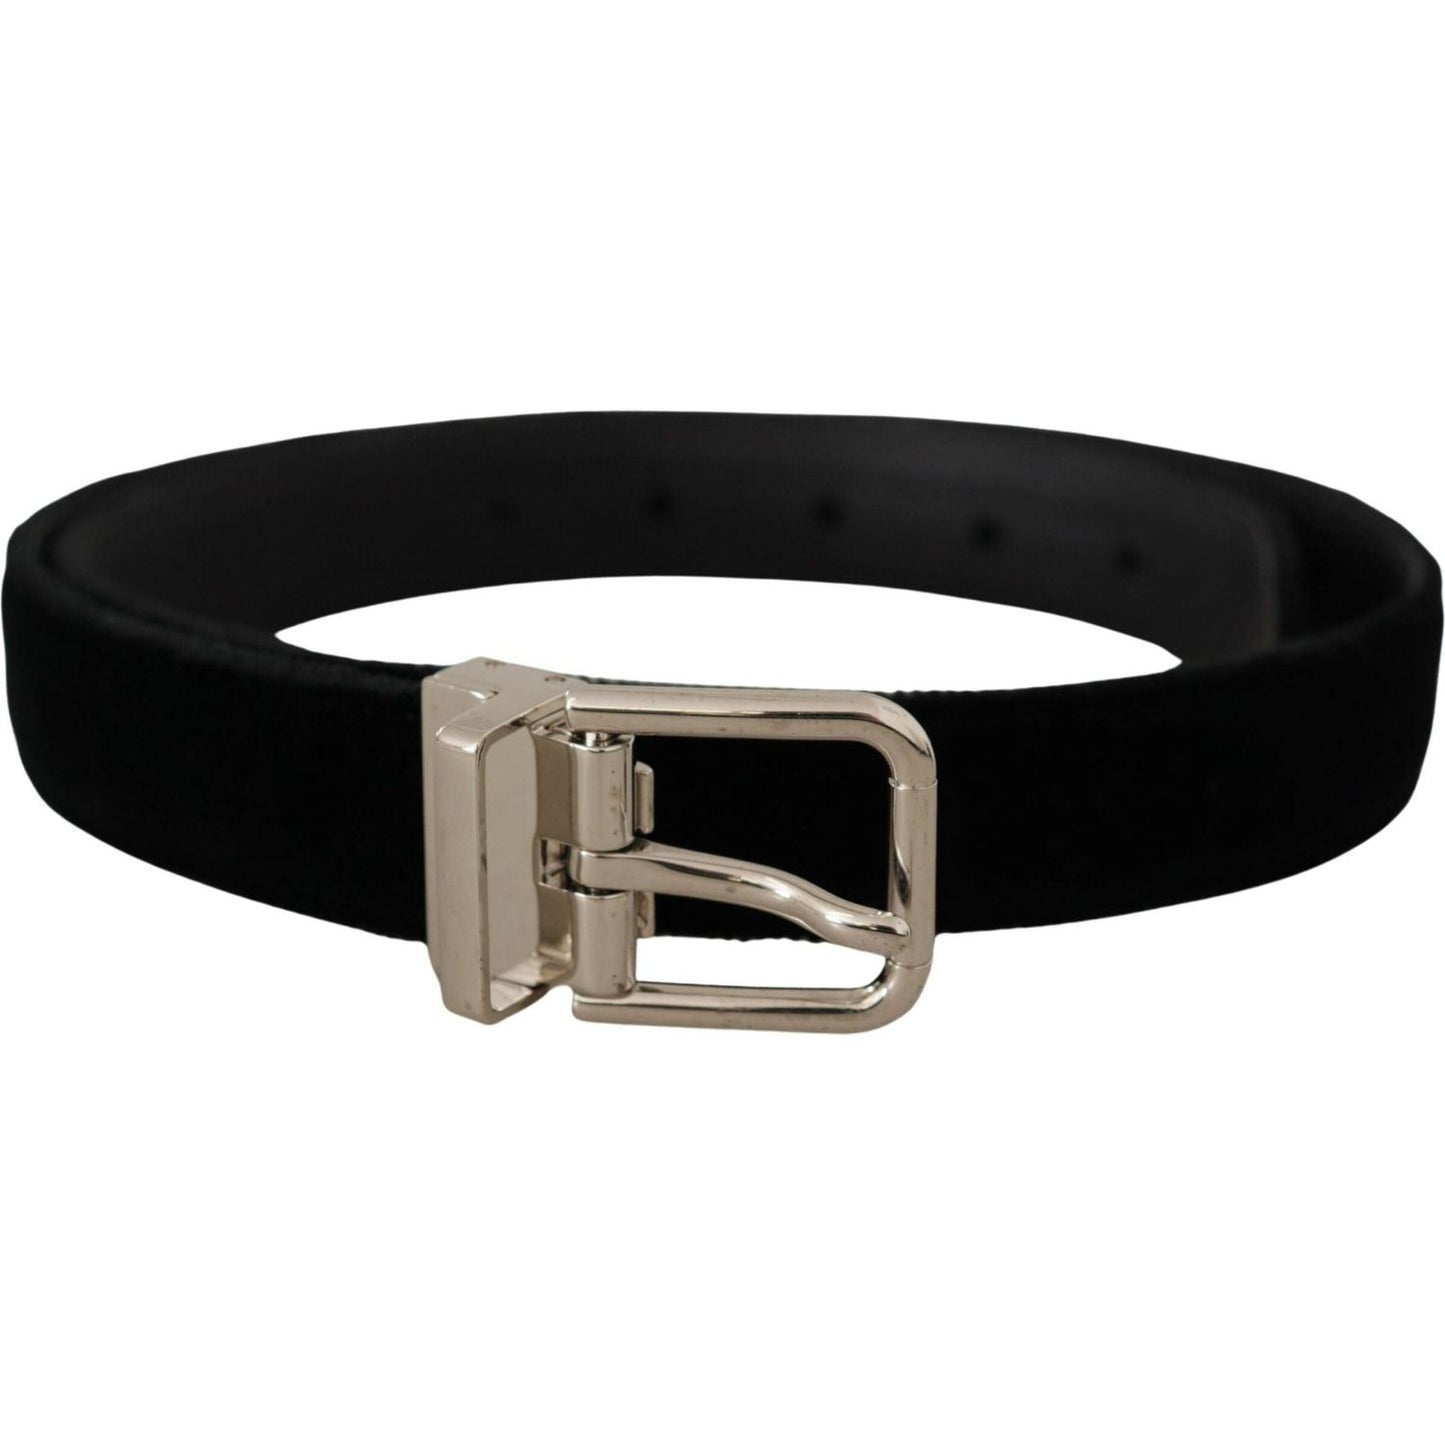 Elegant Grosgrain Leather Belt